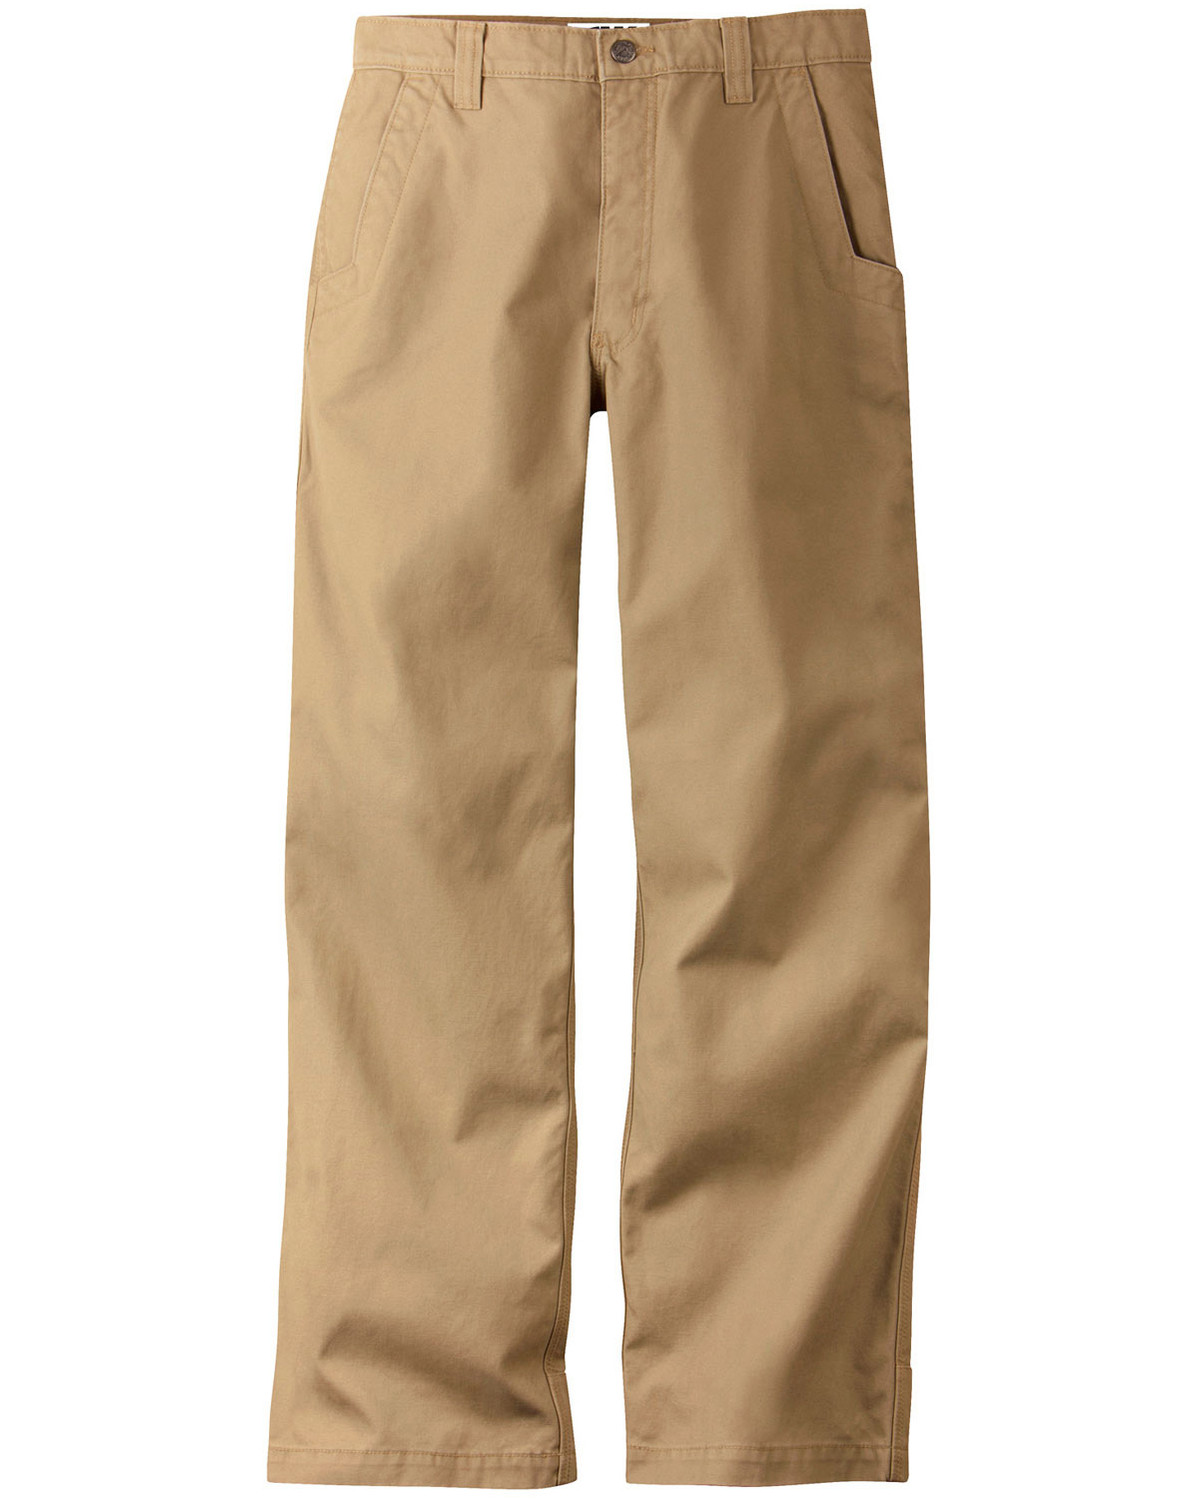 light colored khaki pants